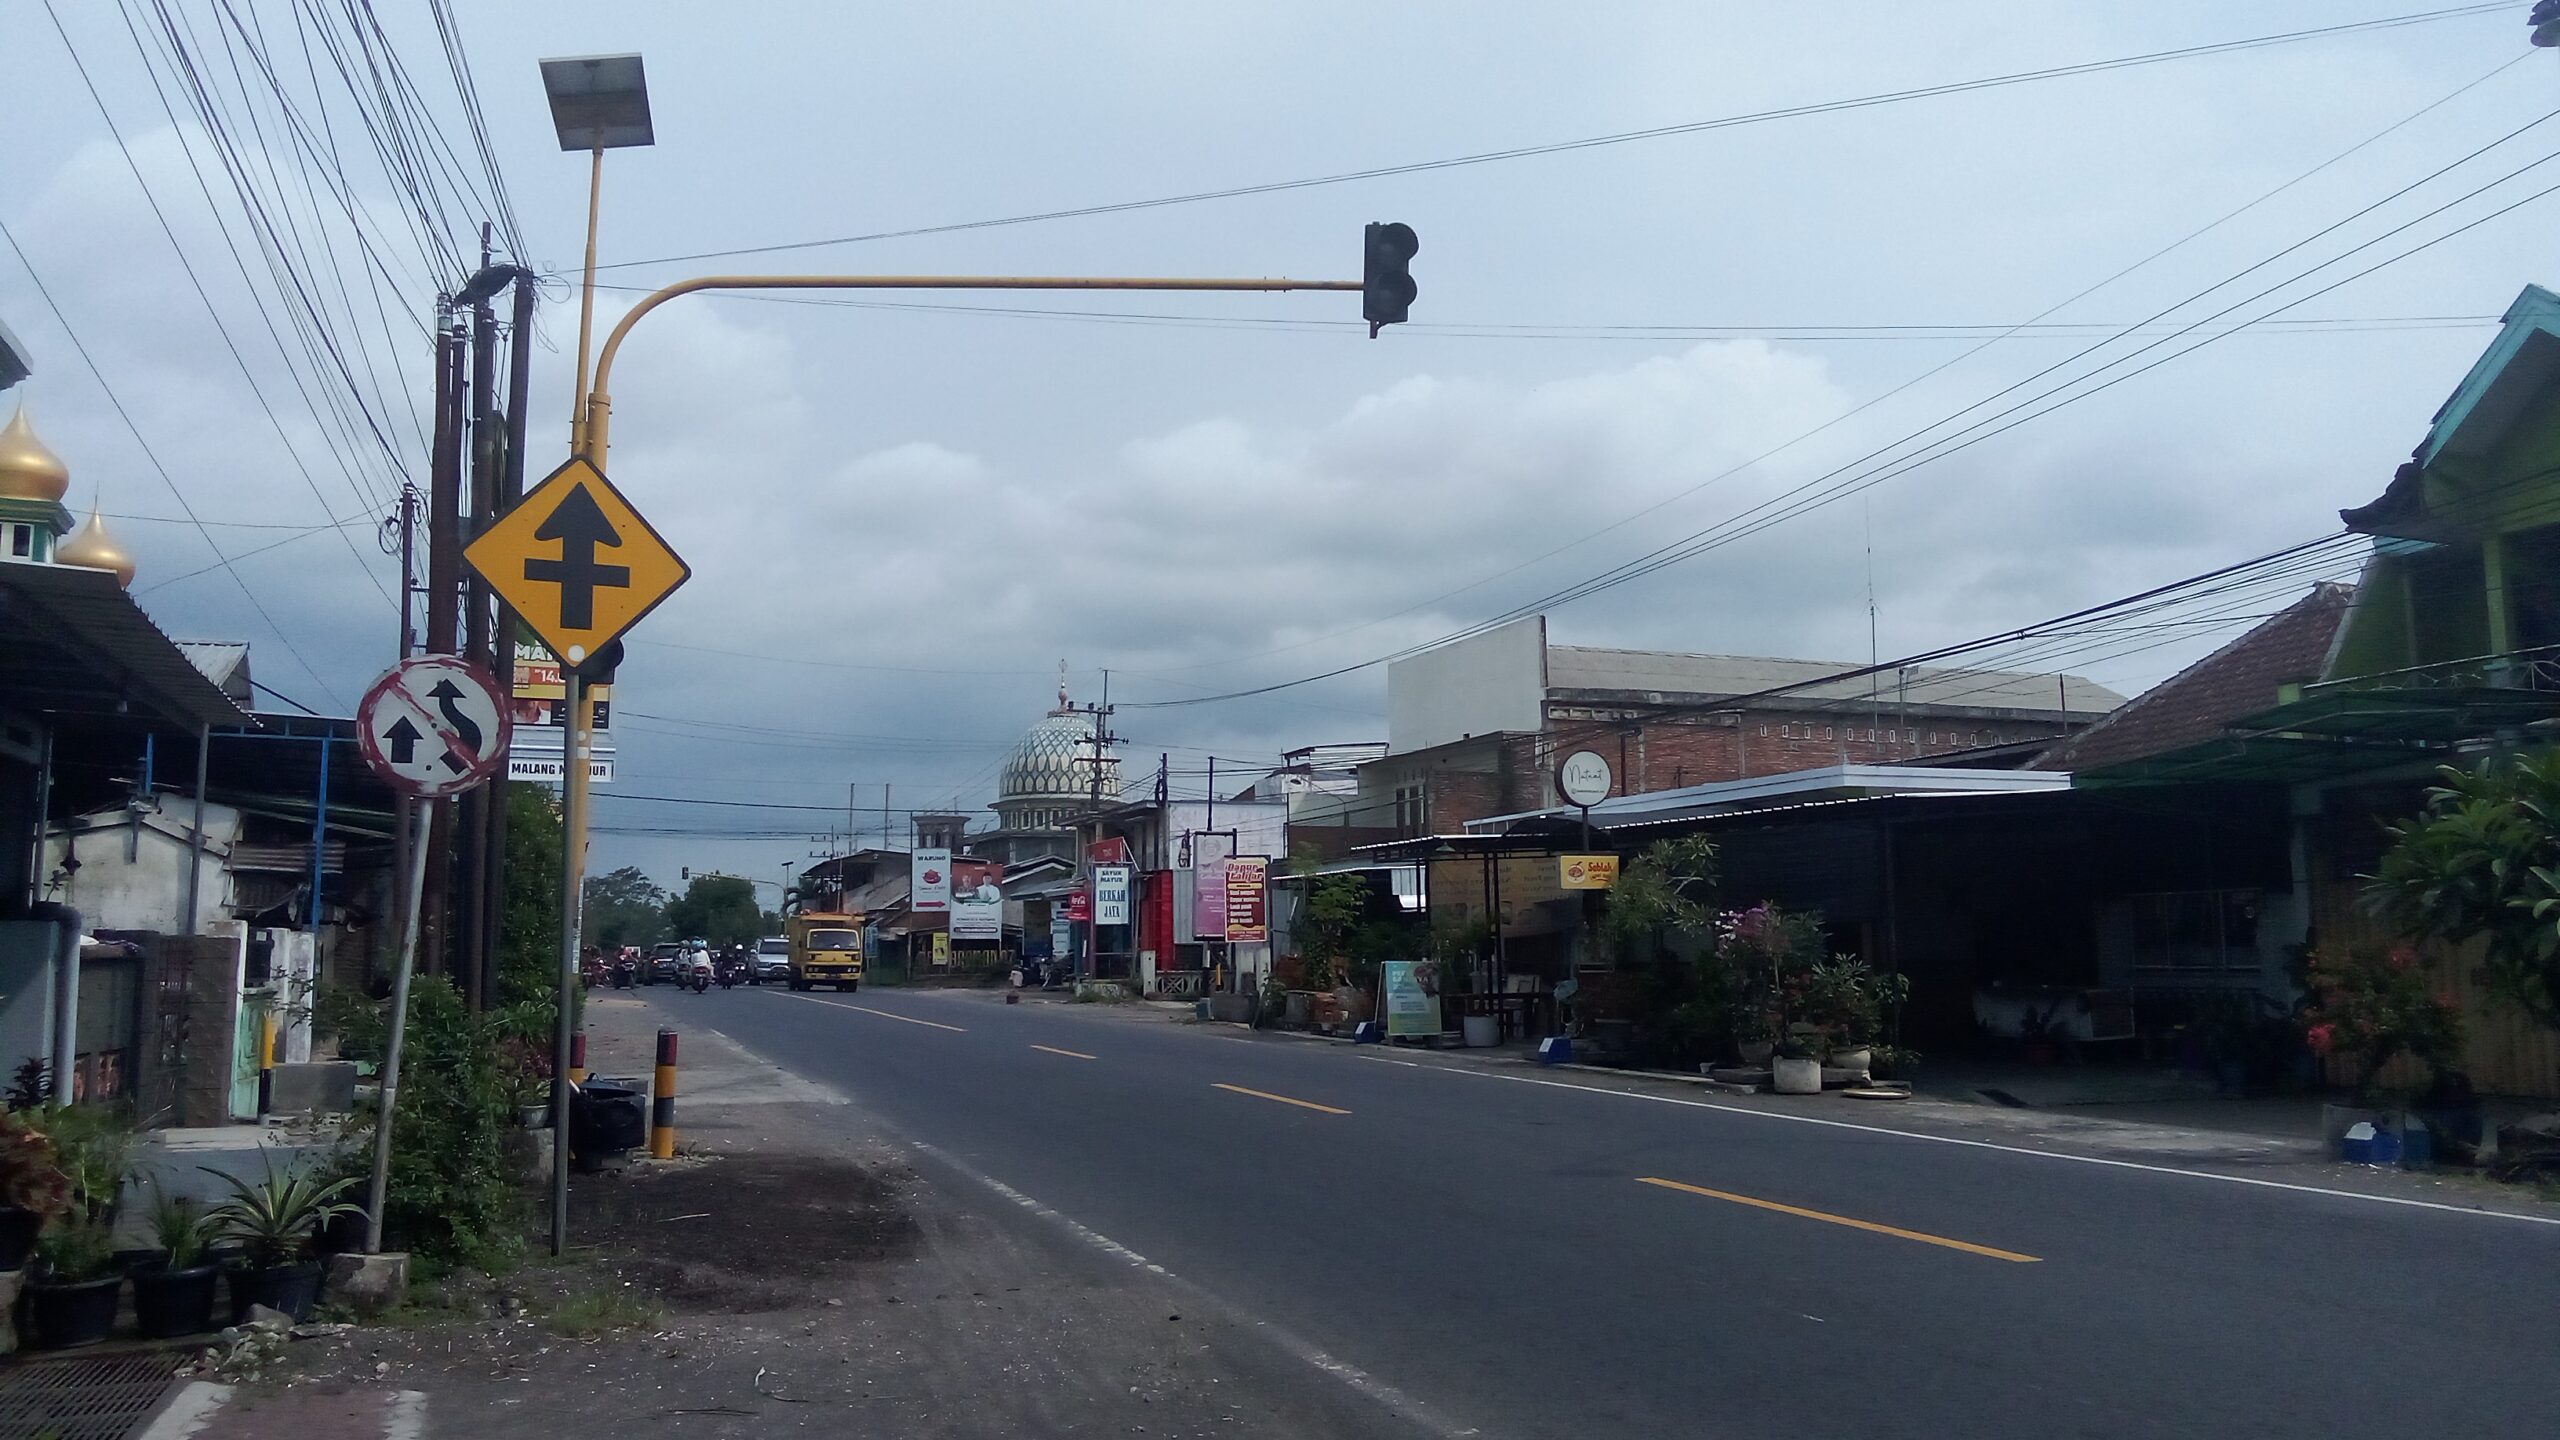 Dishub Kabupaten Malang Mencetuskan Usulan Penambahan Rambu Lalu Lintas untuk Meningkatkan Keselamatan Jalan